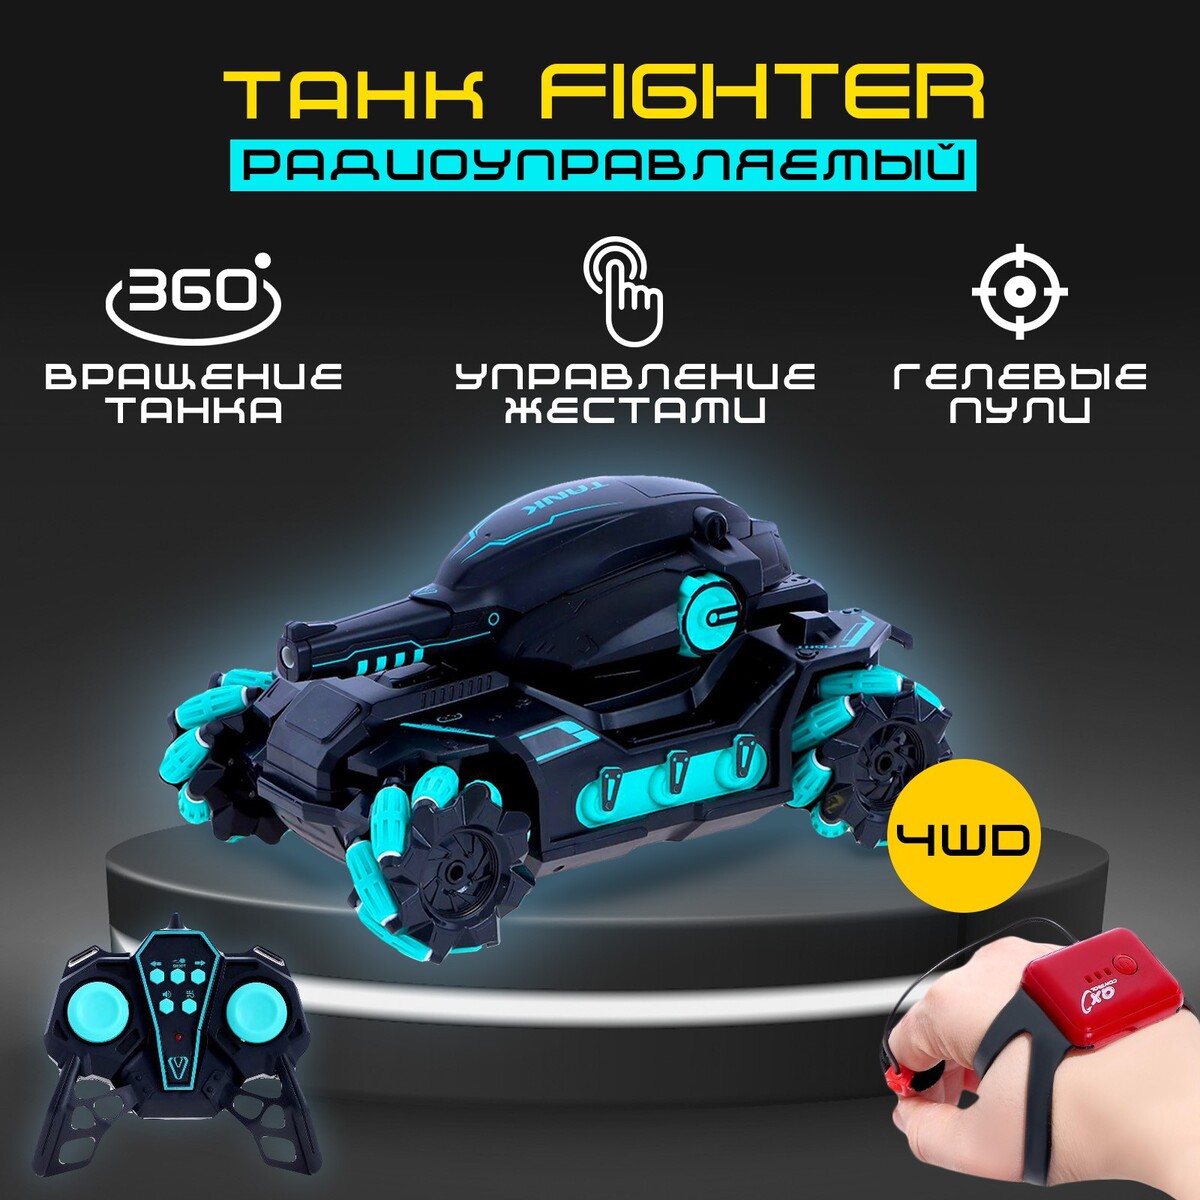 Танк радиоуправляемый fighter, 4wd, управление жестами, стреляет гелевыми пулями, цвет черно-синий meixin радиоуправляемый микро танк 1 77